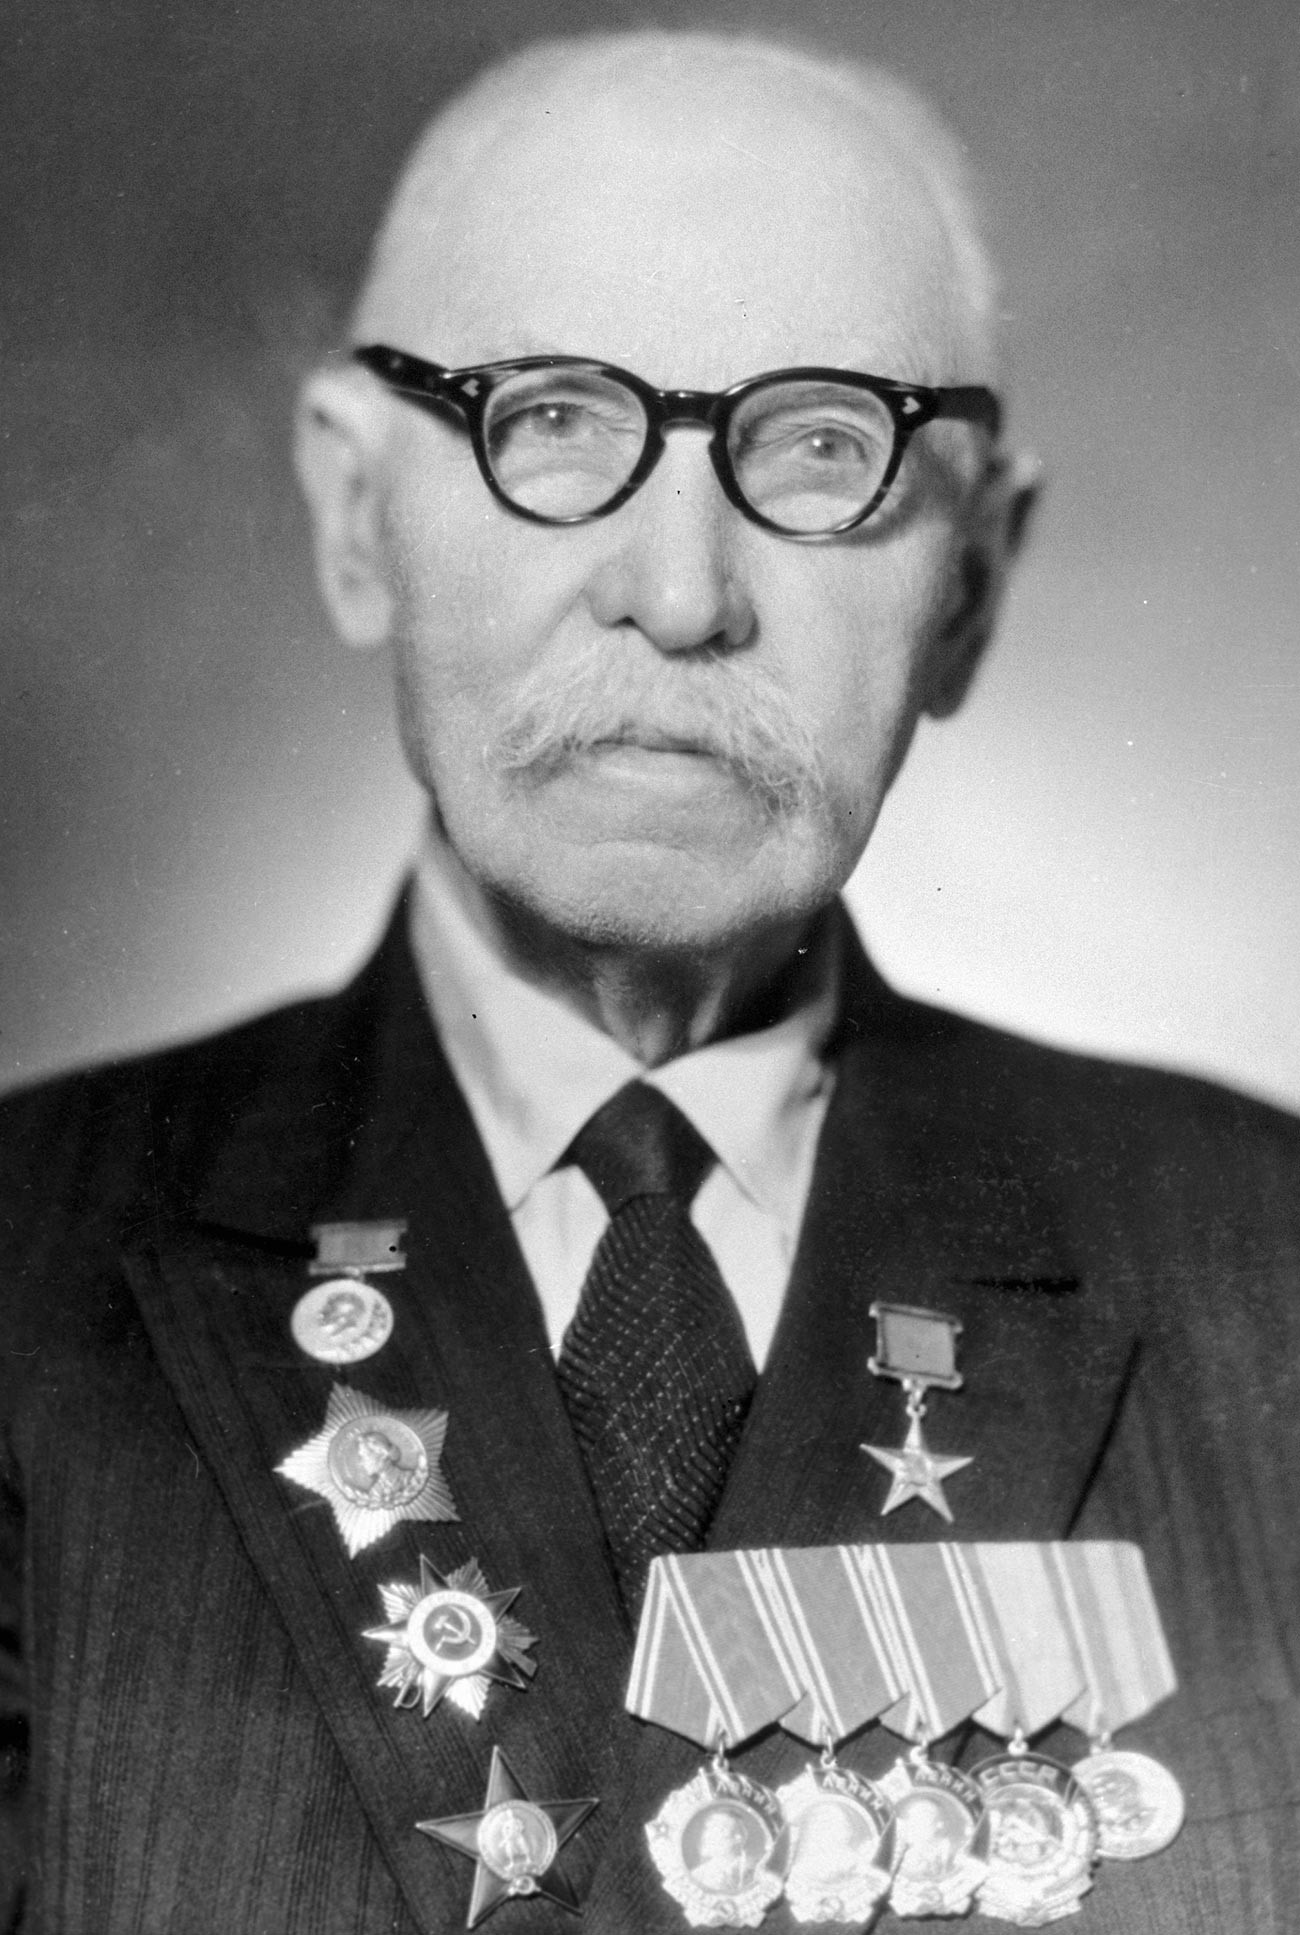 Sowjetischer Kleinwaffenkonstrukteur, Doktor der Technischen Wissenschaften, Held der sozialistischen Arbeit, Träger des Stalin-Preises ersten Grades. Fedor Tokarew (1871-1968).